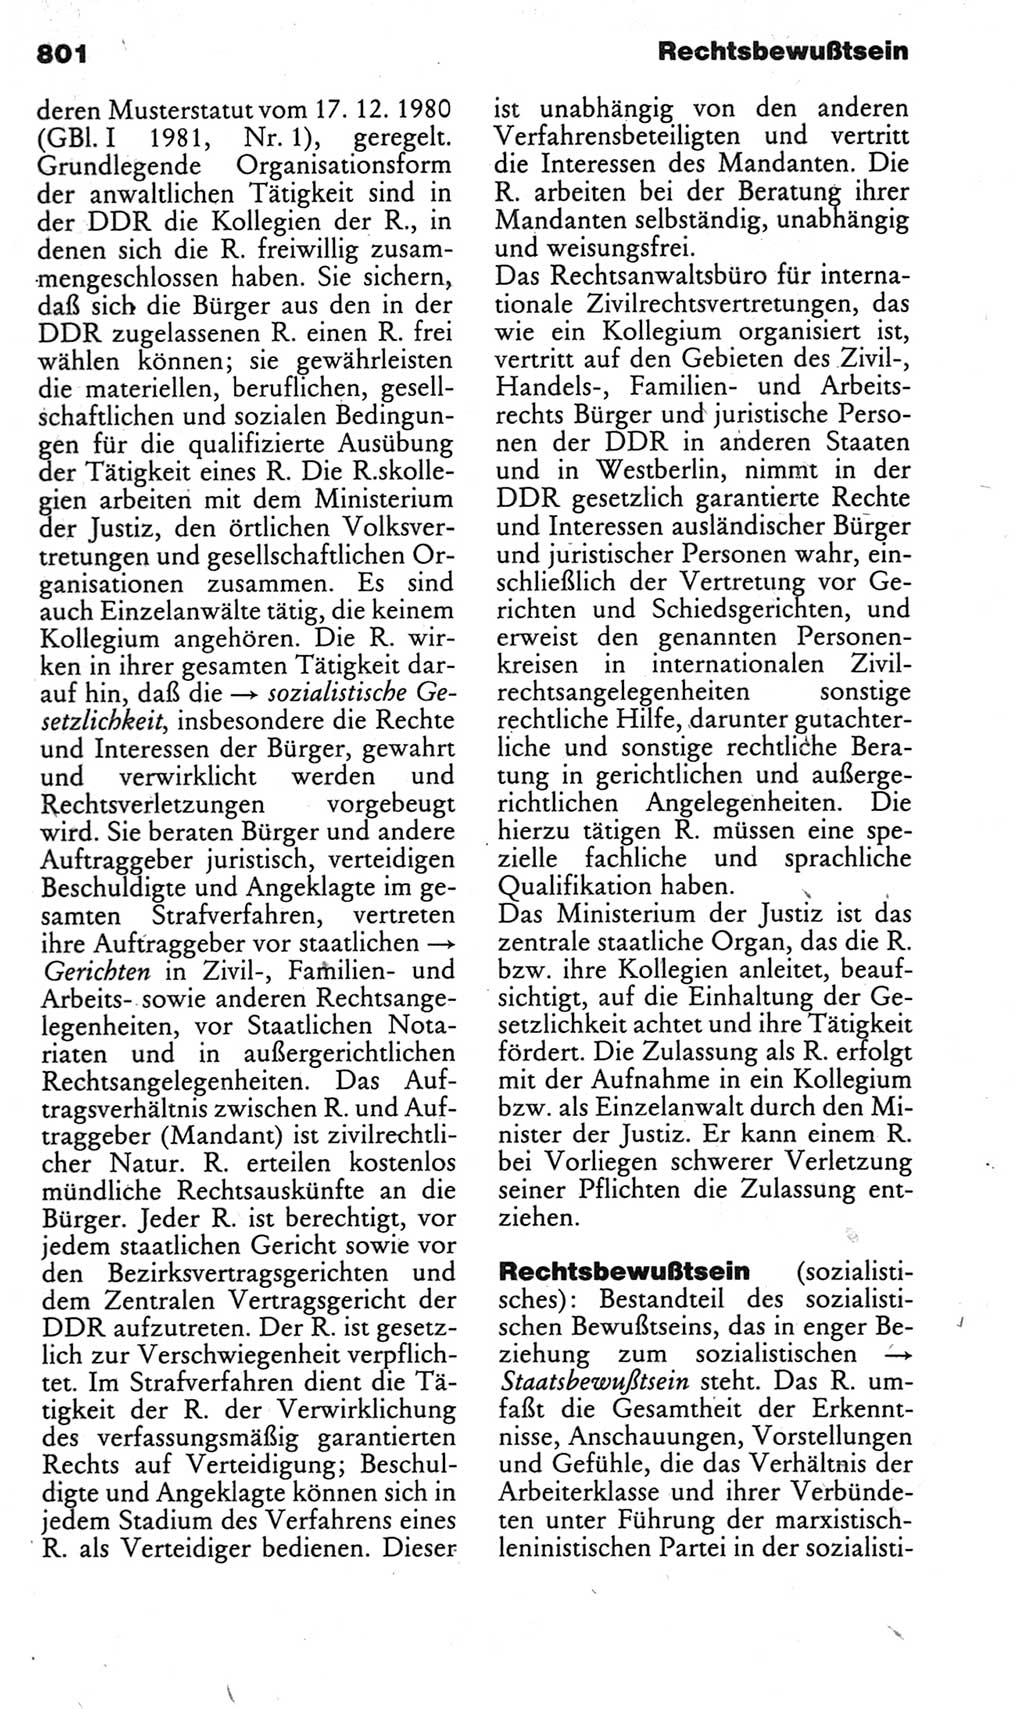 Kleines politisches Wörterbuch [Deutsche Demokratische Republik (DDR)] 1983, Seite 801 (Kl. pol. Wb. DDR 1983, S. 801)